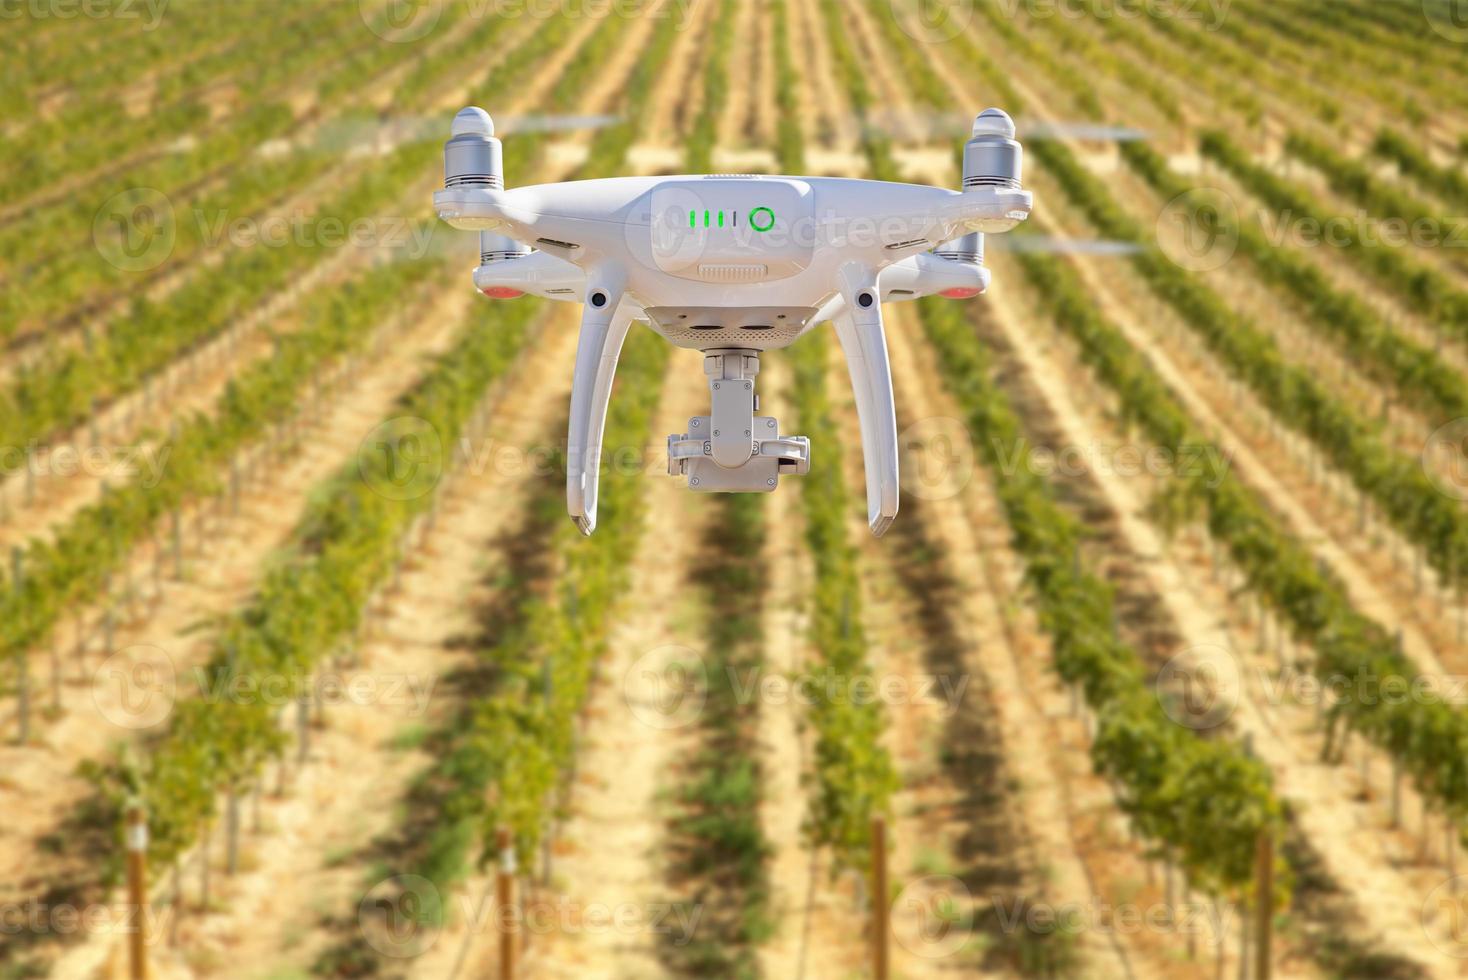 drone quadricoptère système d'avion sans pilote dans les airs au-dessus d'une ferme de vignes photo